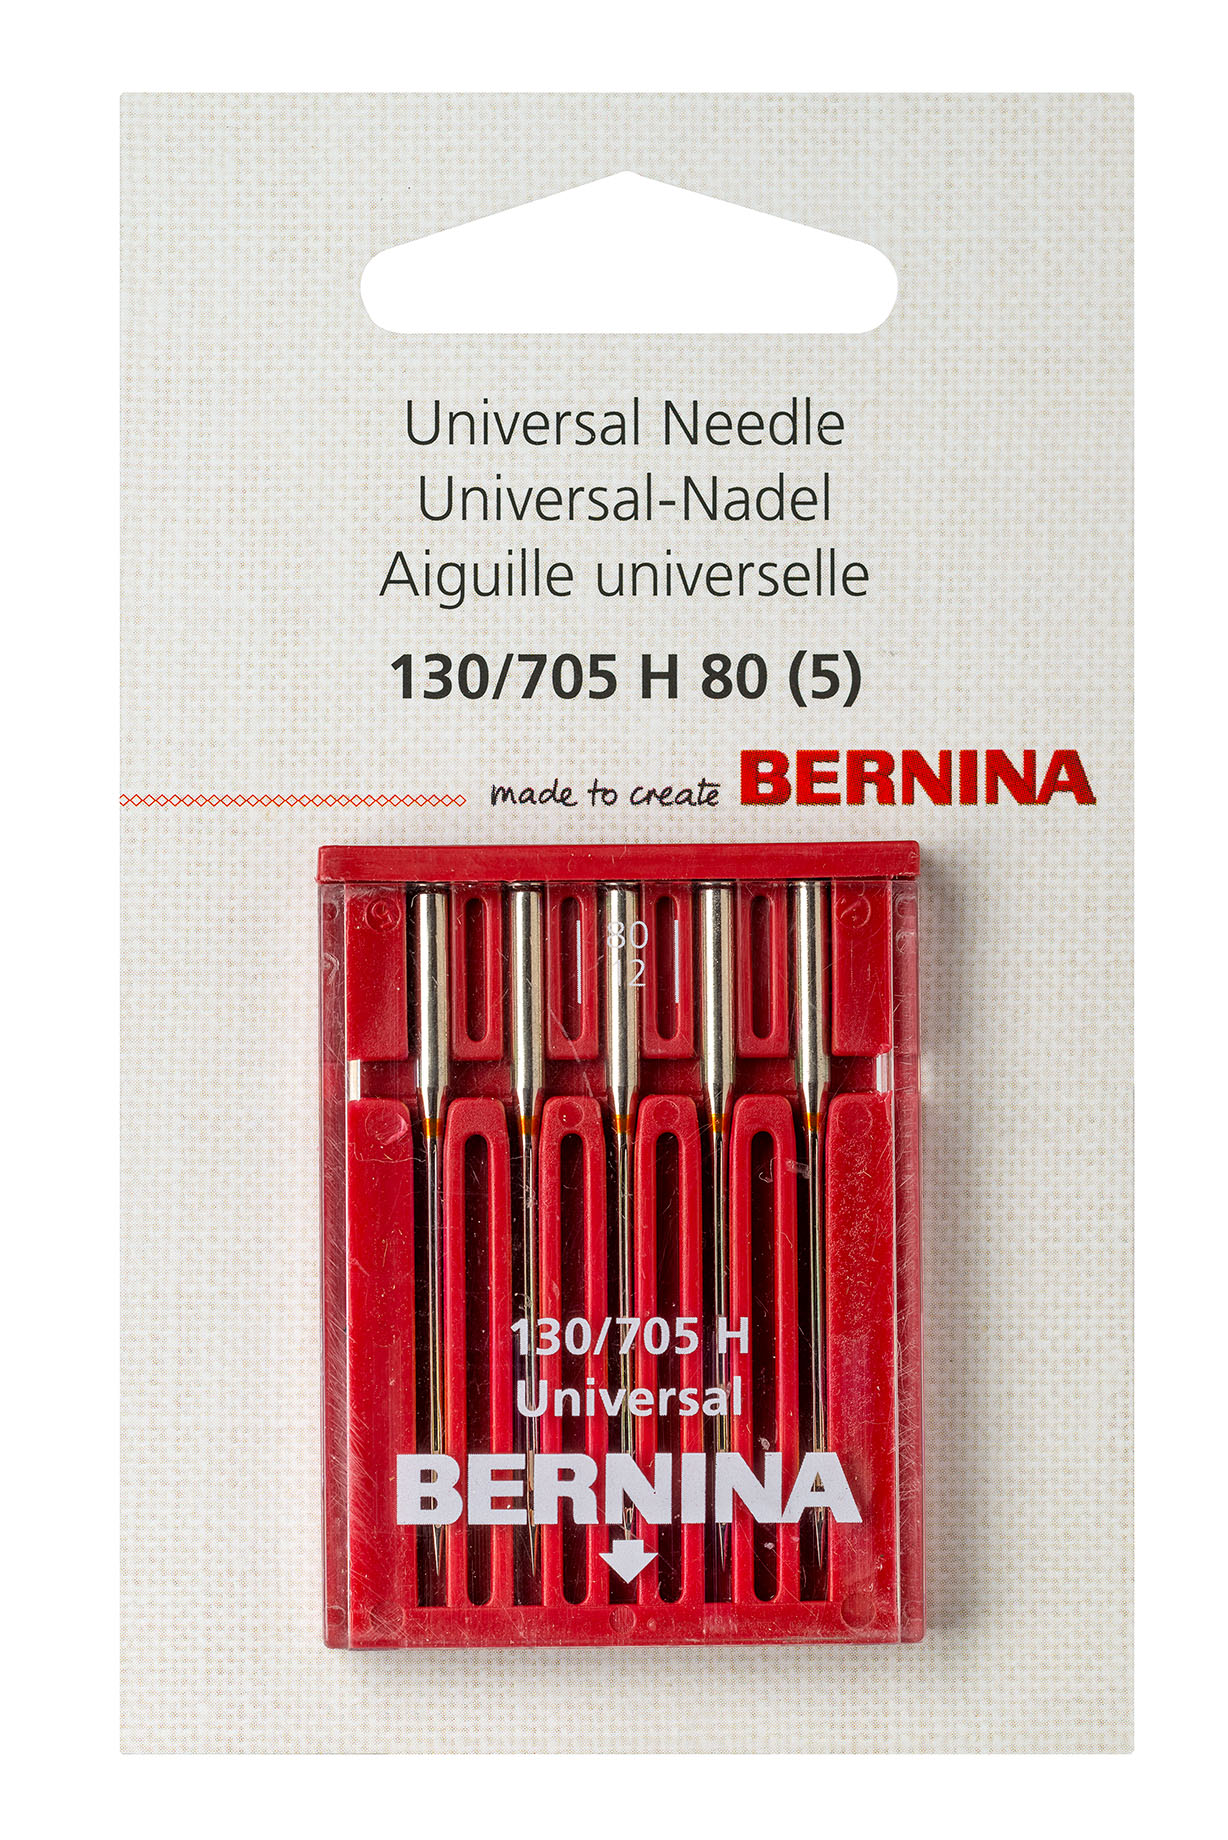 Universal needle